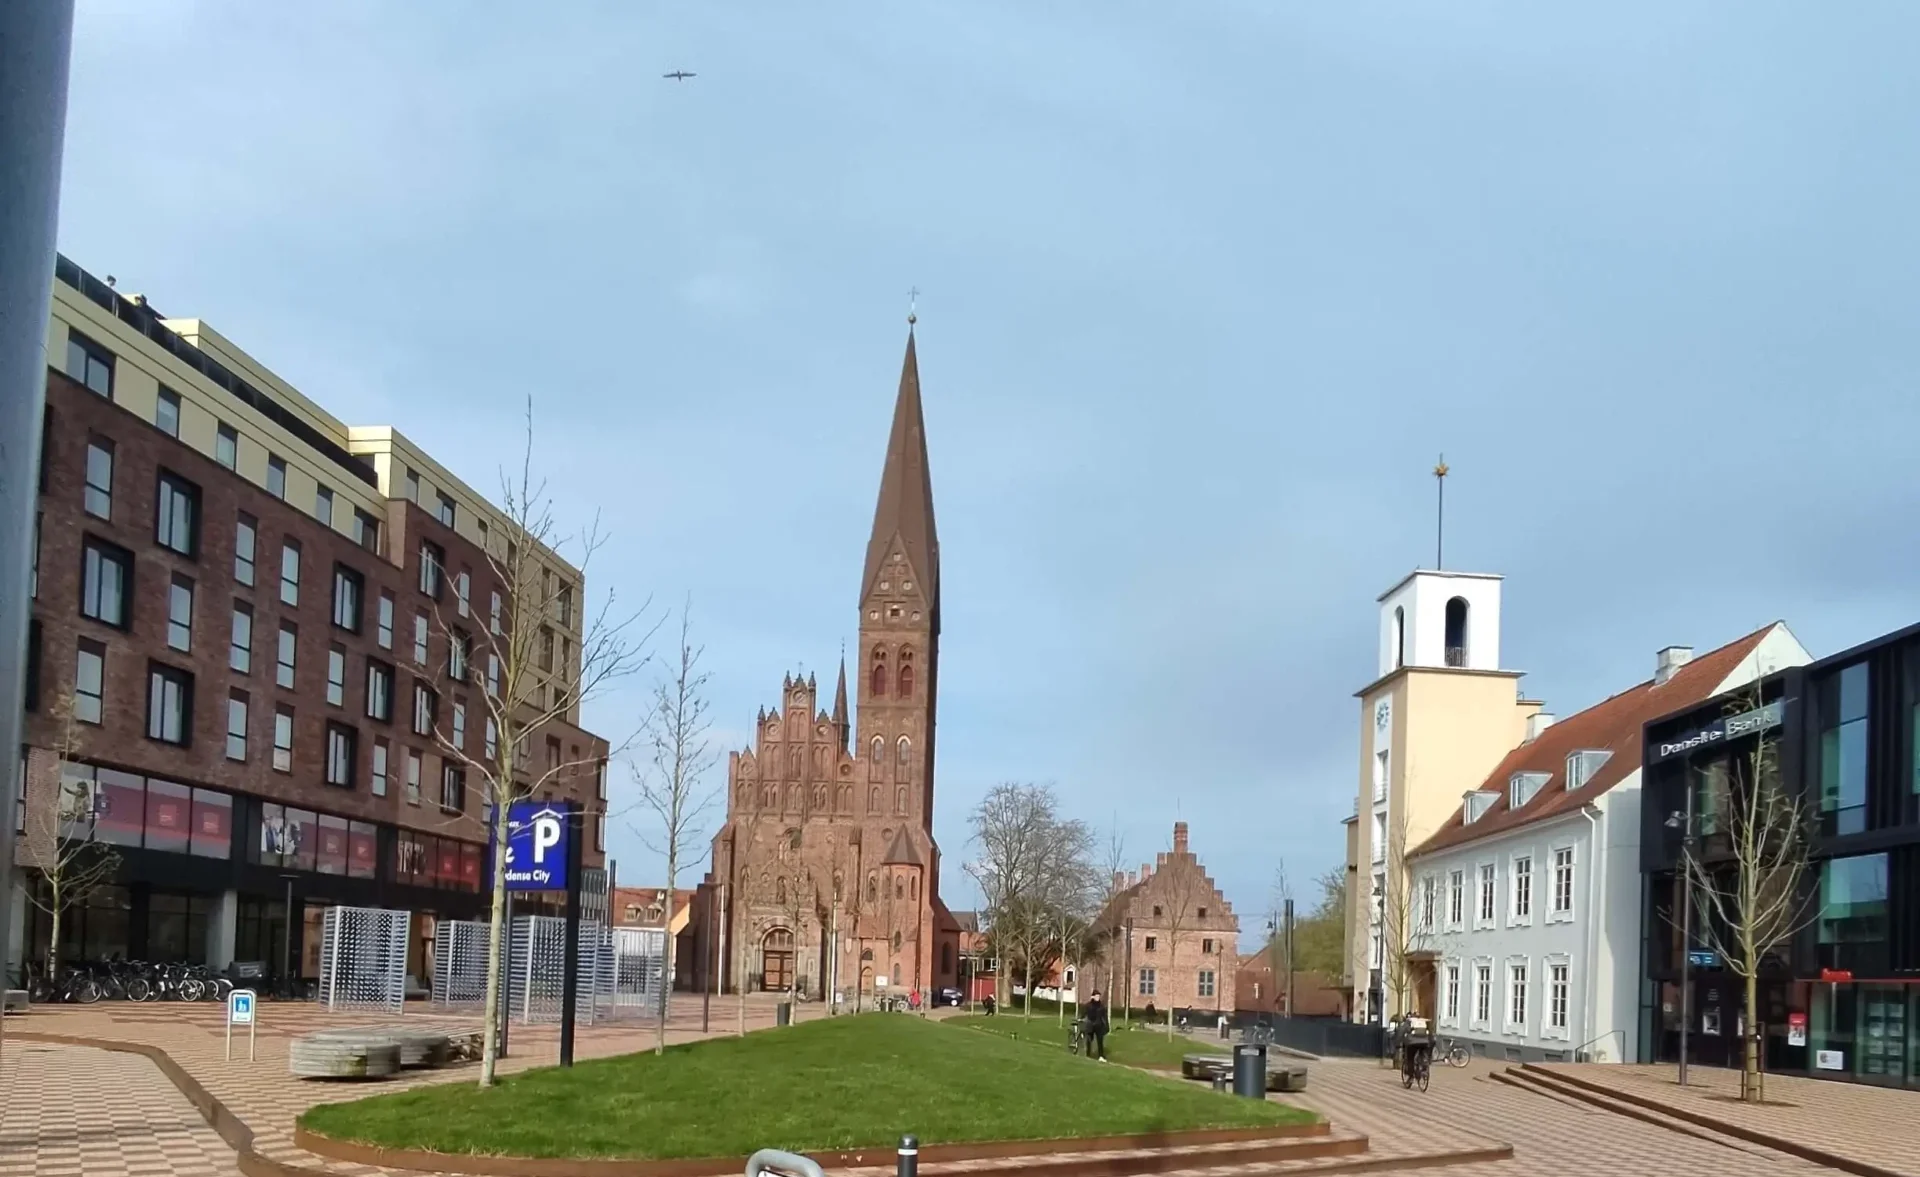 Ανακαλύπτοντας το Odense: Από τα Παραμύθια στις Περιπέτειες των Βίκινγκς